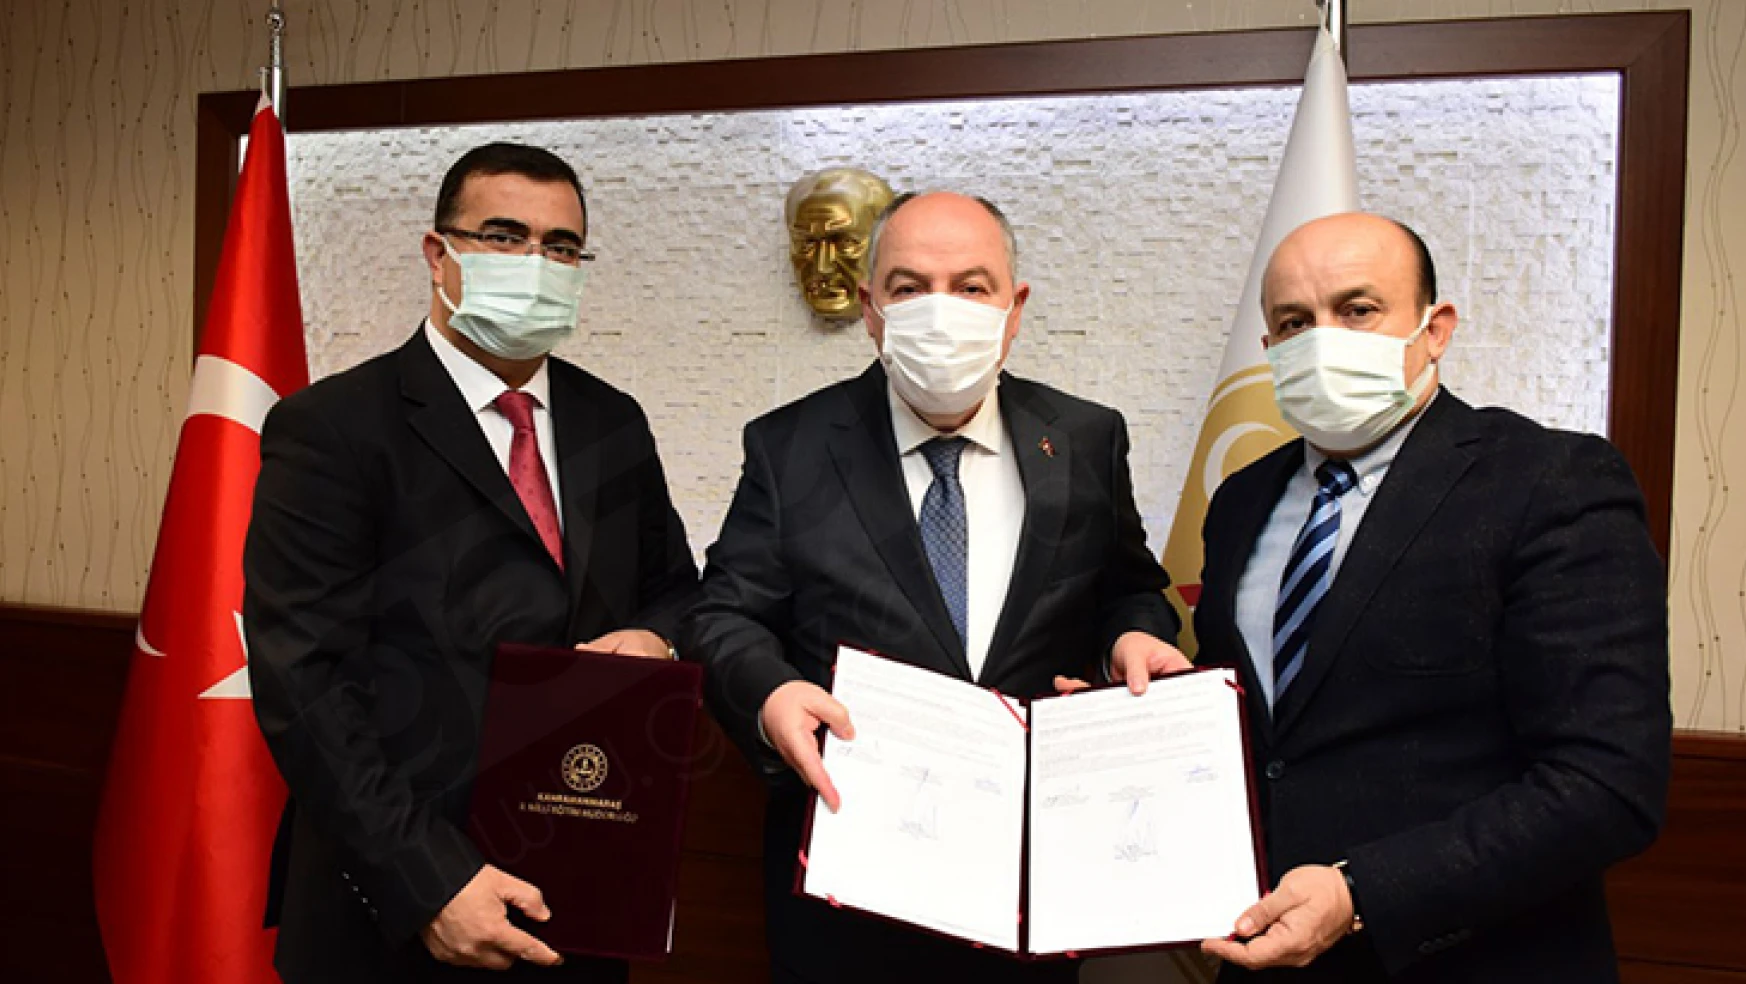 81 İl 81 Anaokulu Projesi için Kahramanmaraş'ta ilk protokol imzalandı